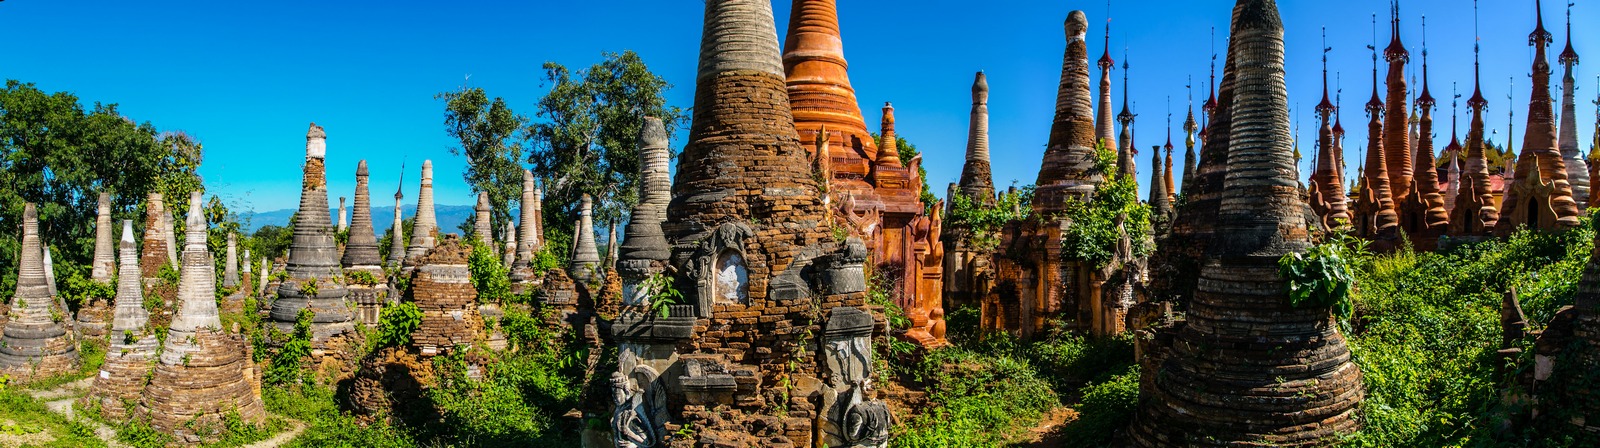 Myanmar Inle Lake Shwe Inn Dein Pagoda 01